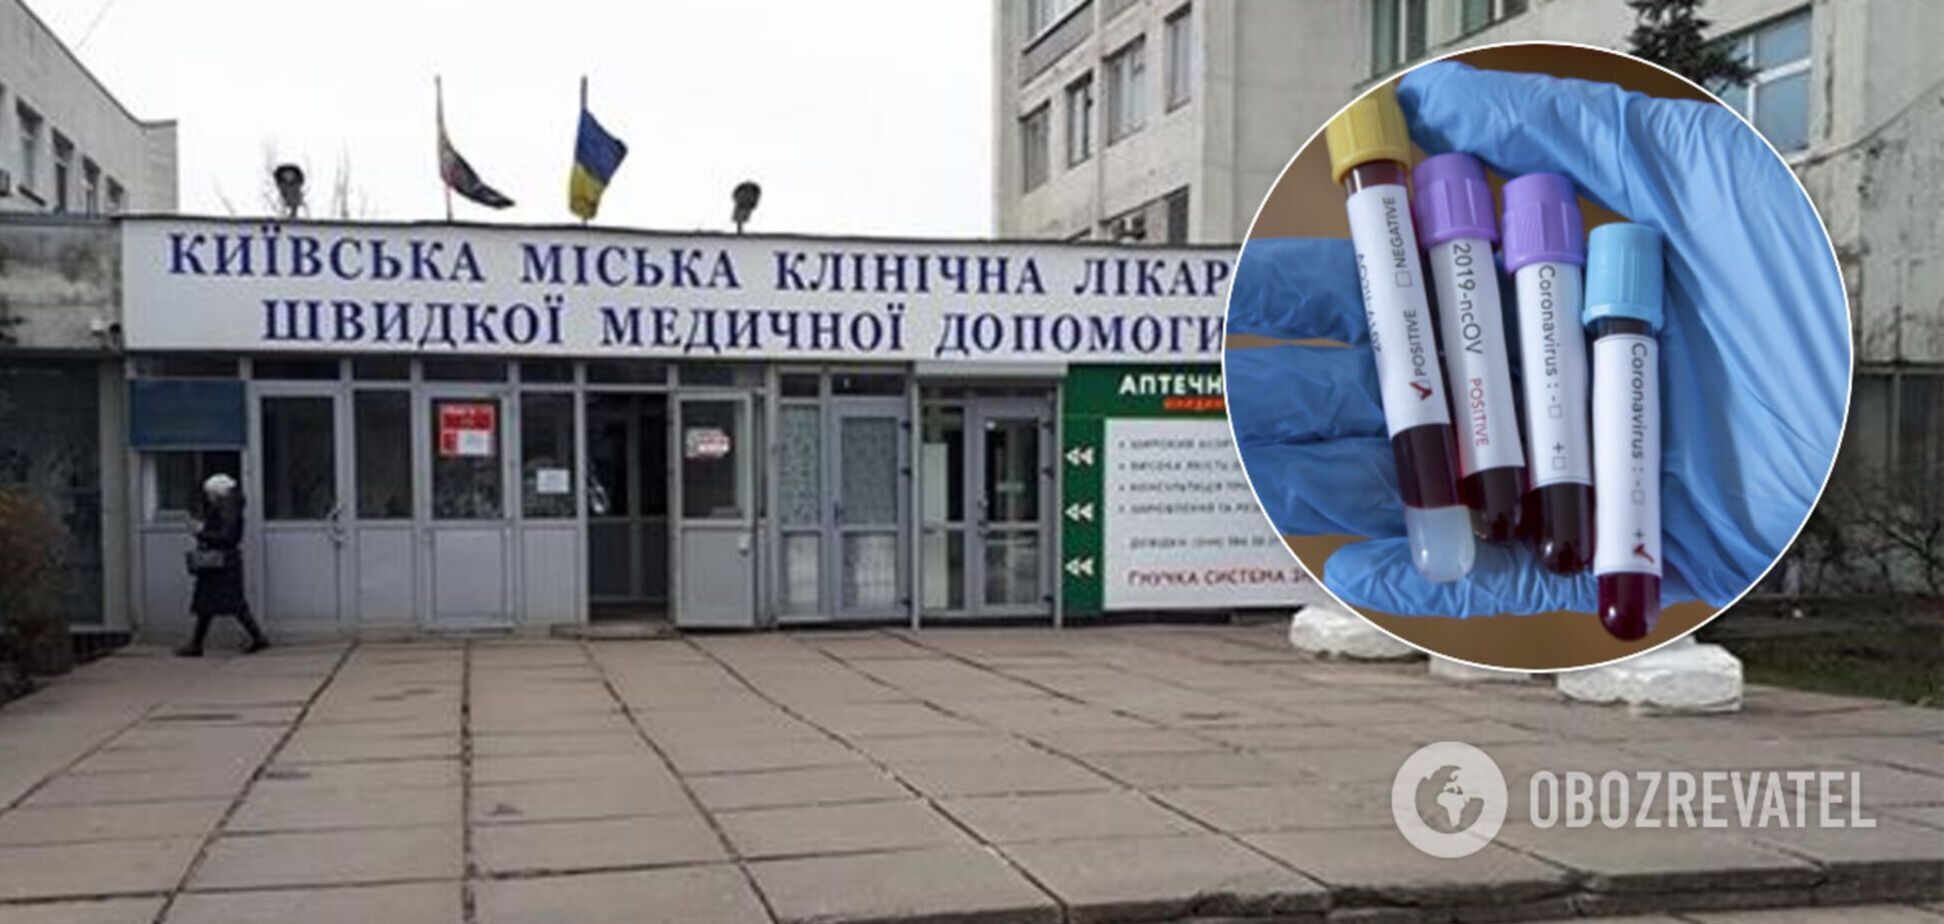 У Київській міській клінічній лікарні швидкої медичної допомоги незабаром розпочне роботу нова ПЛР-лабораторія